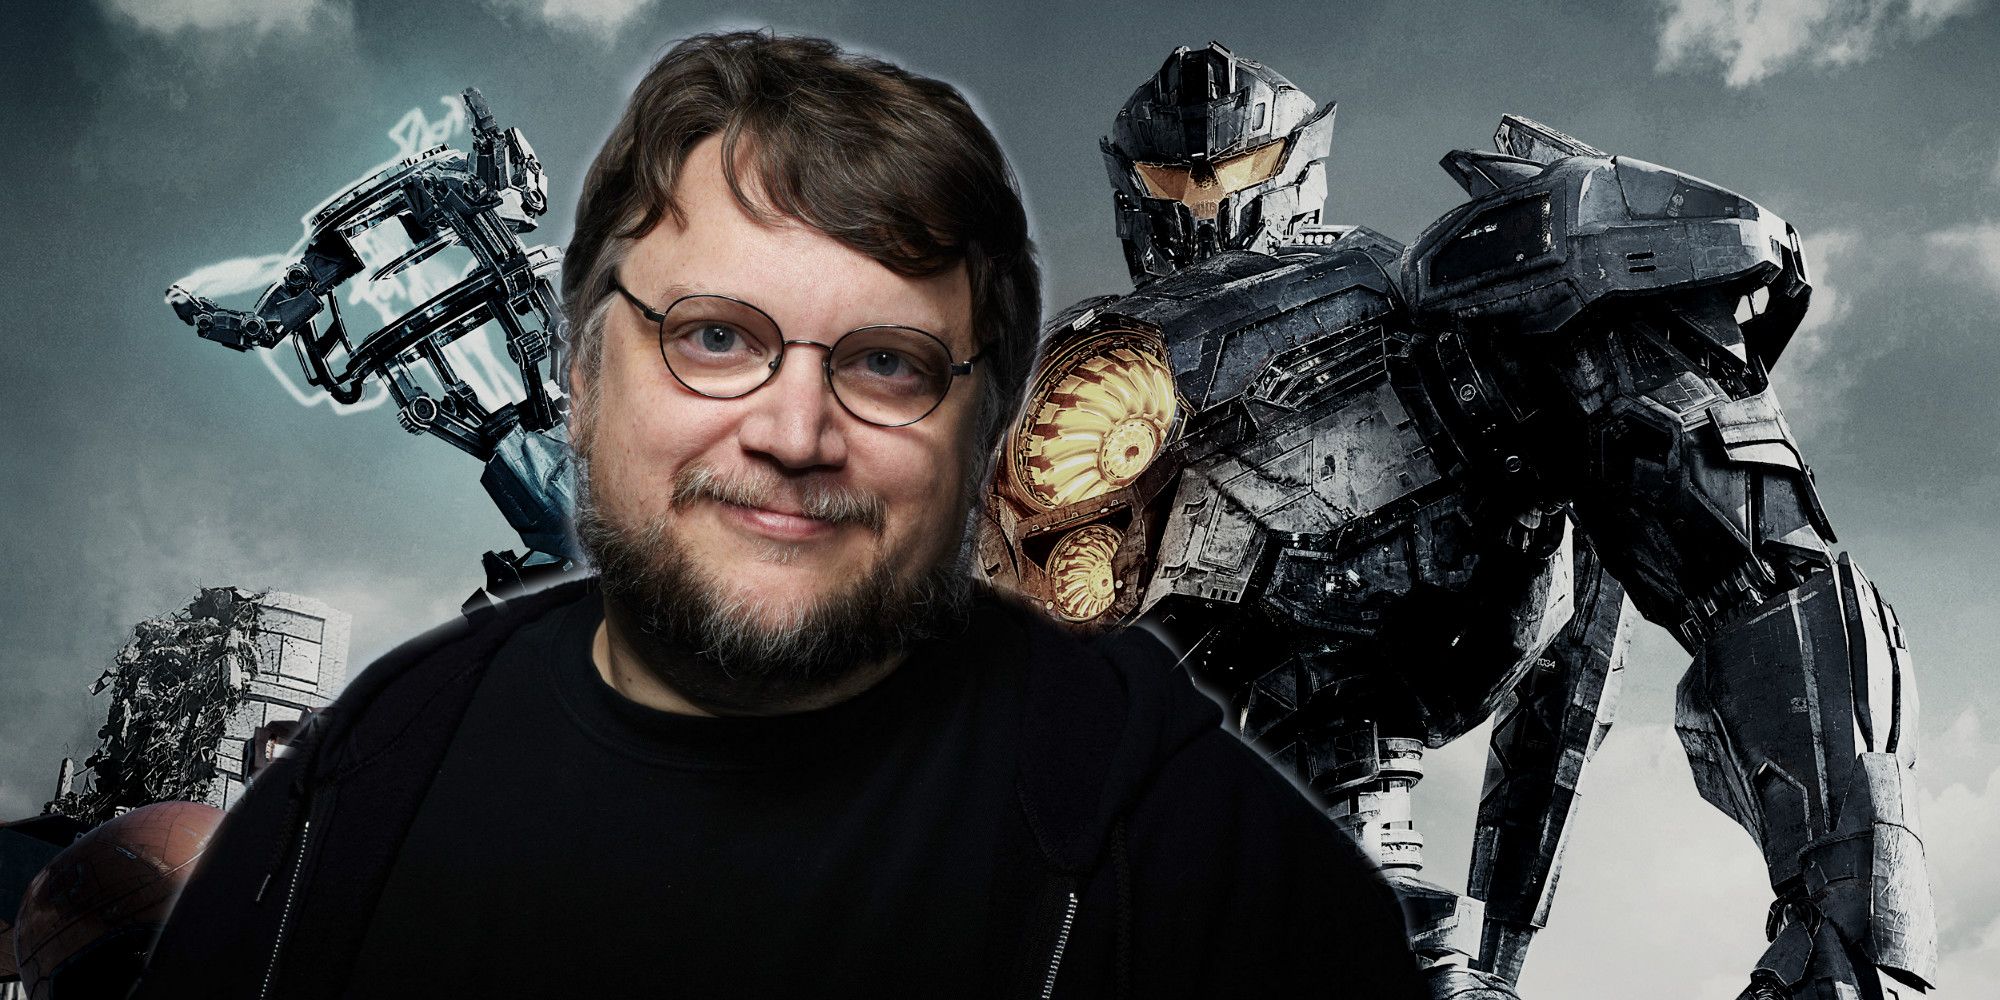 Guillermo del Toro Should Make A PROPER Pacific Rim 2